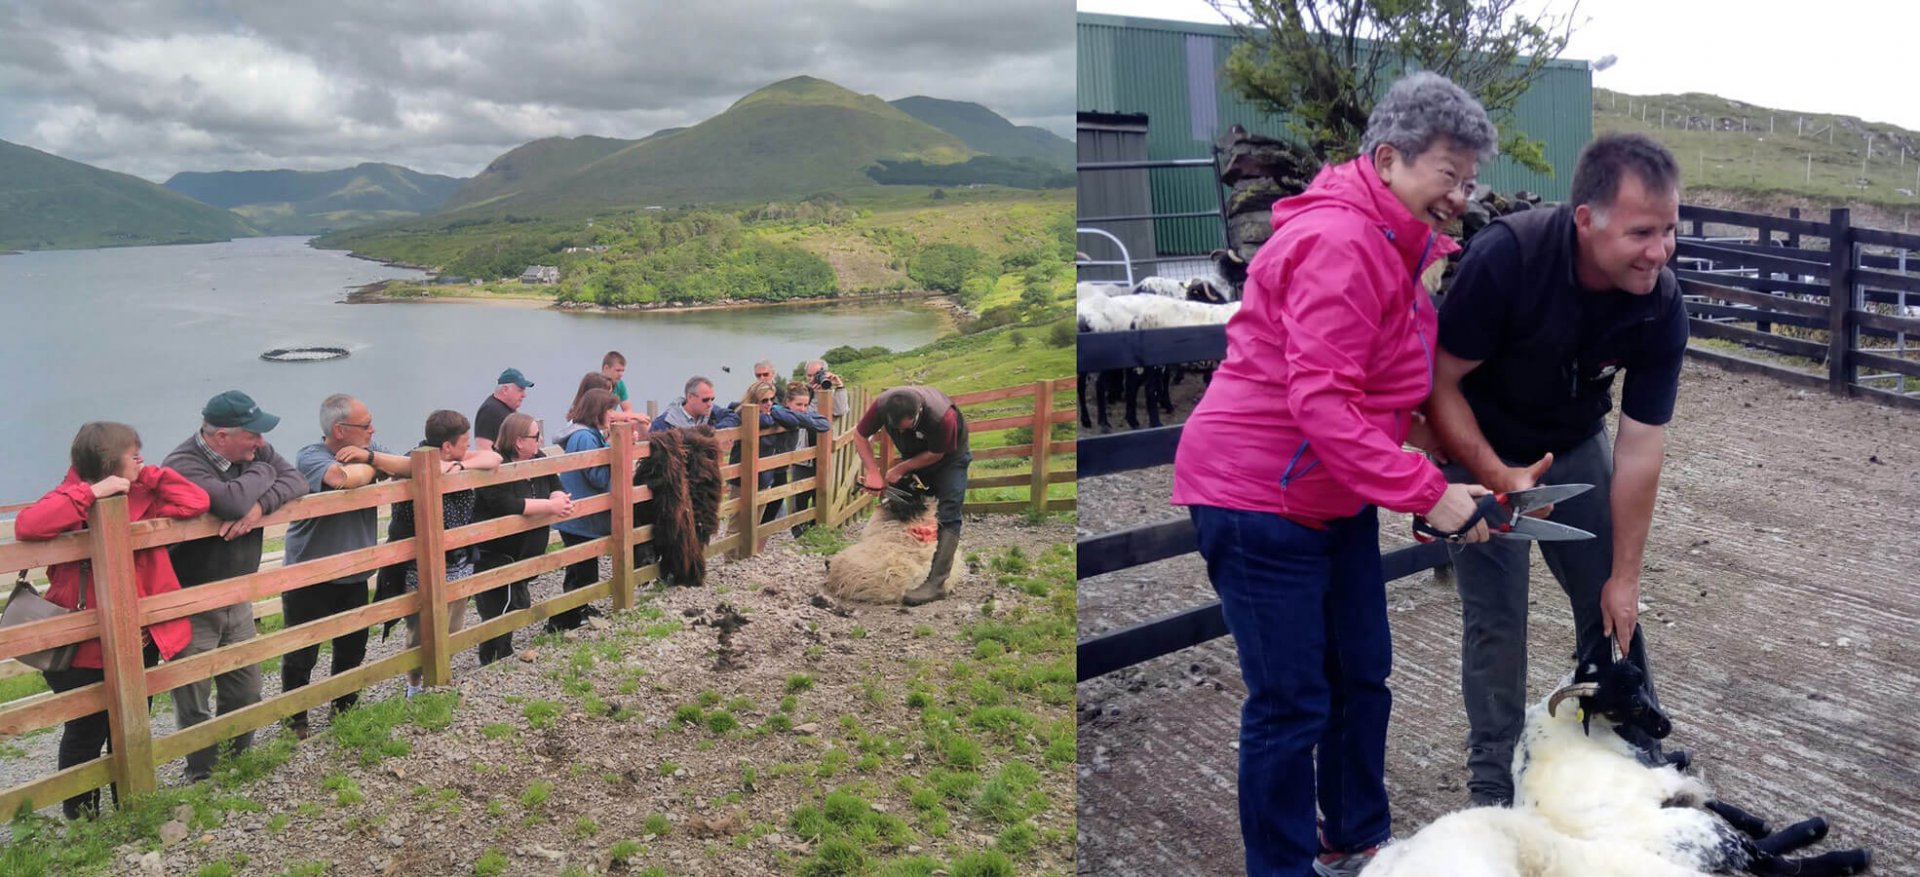 sheep farm tour from dublin